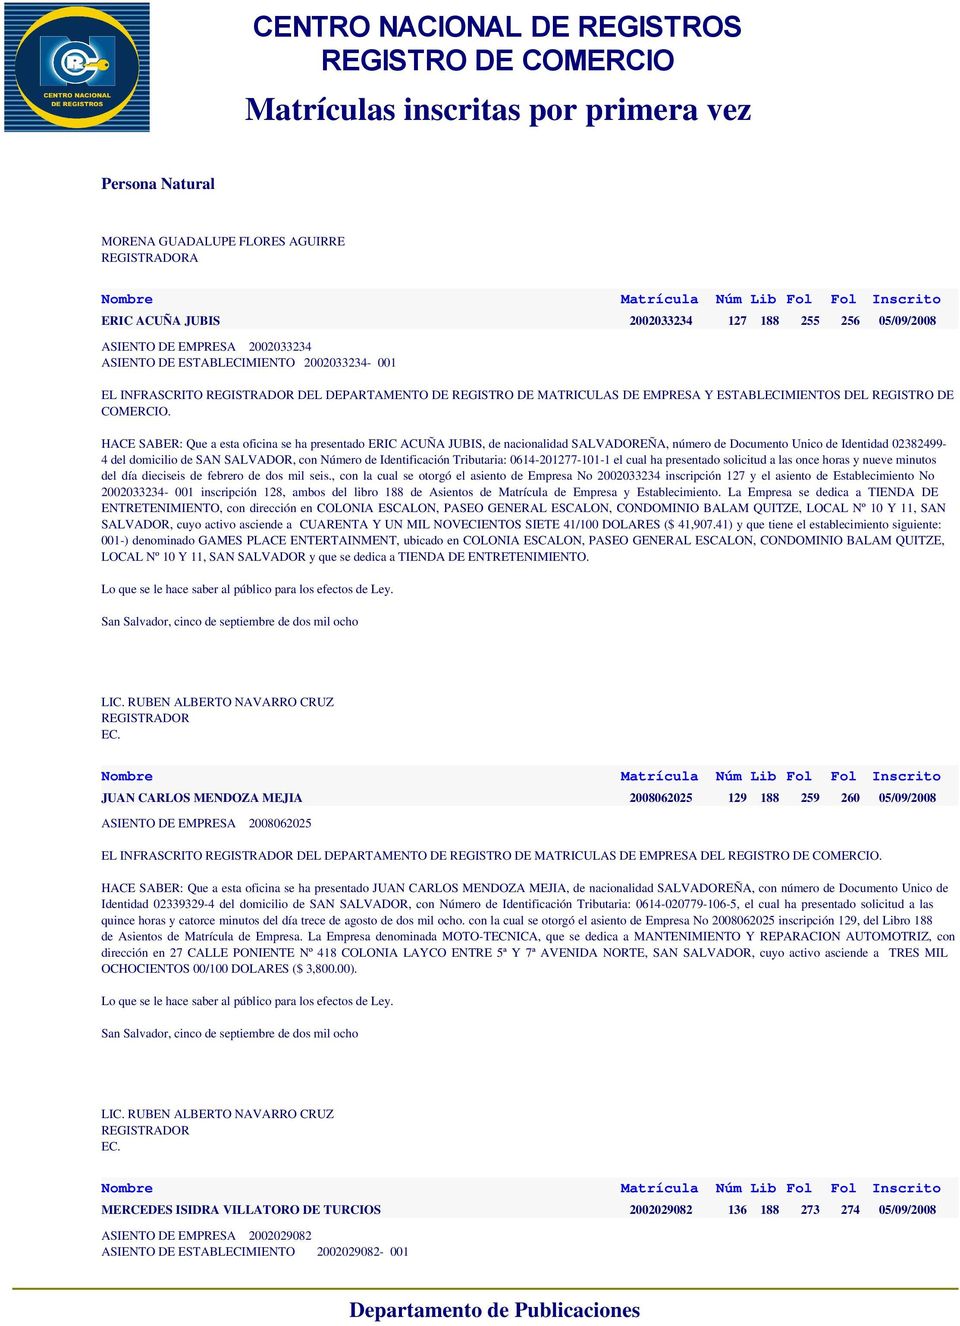 nacionalidad SALVADOREÑA, número de Documento Unico de Identidad 02382499-4 del domicilio de SAN SALVADOR, con ero de Identificación Tributaria: 0614-201277-101-1 el cual ha presentado solicitud a